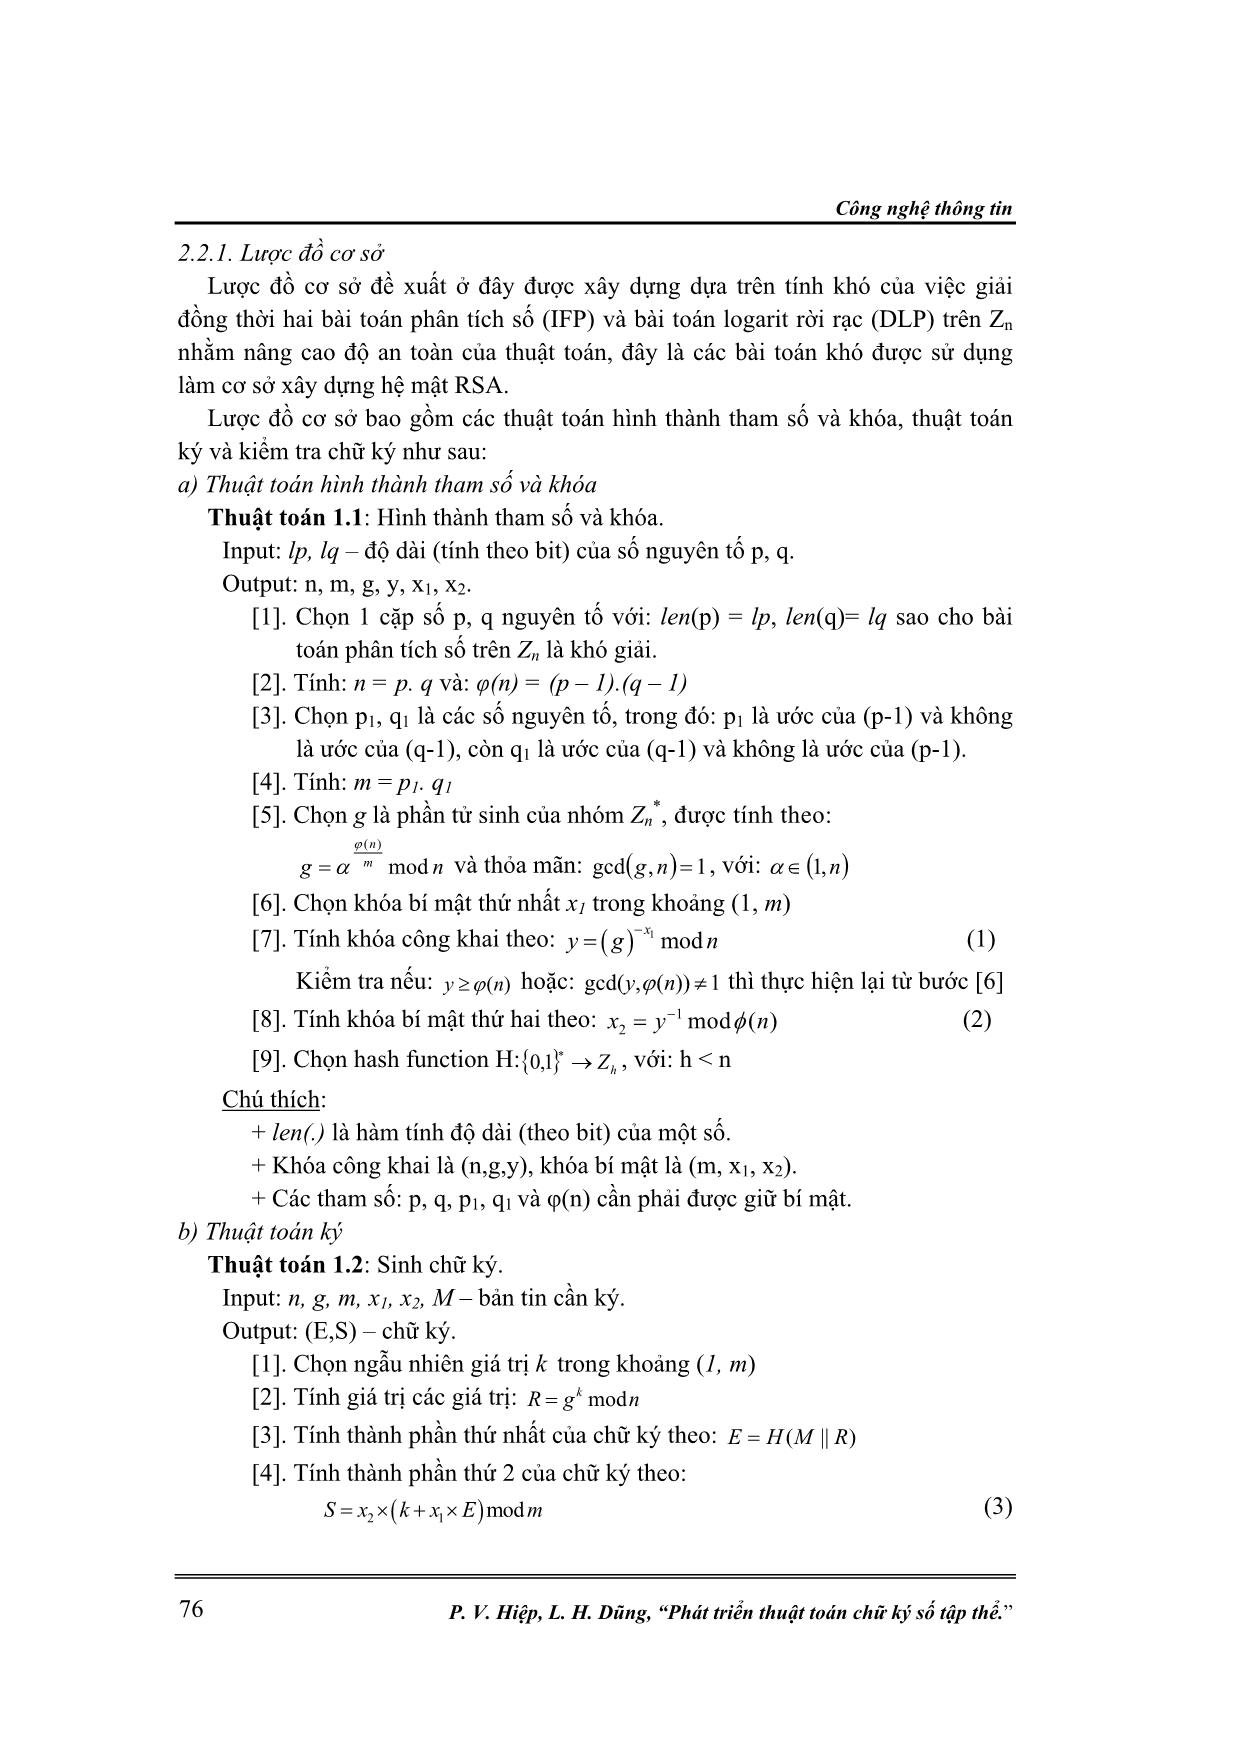 Phát triển thuật toán chữ ký số tập thể trang 3